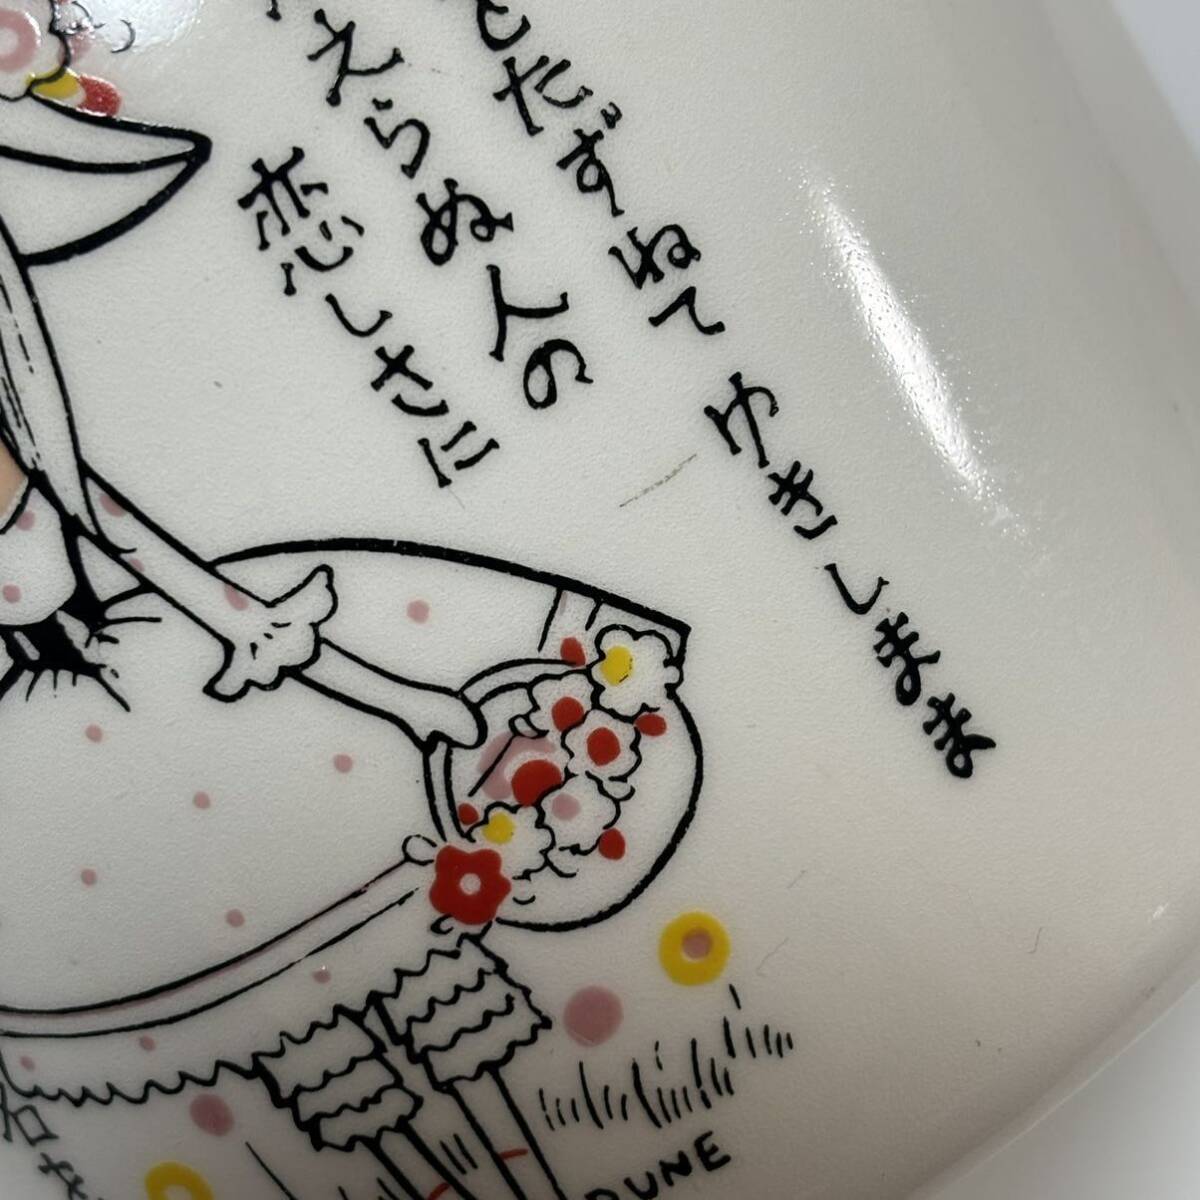  внутри глициния Rene RUNE Showa Retro керамика ваза античный подлинная вещь 